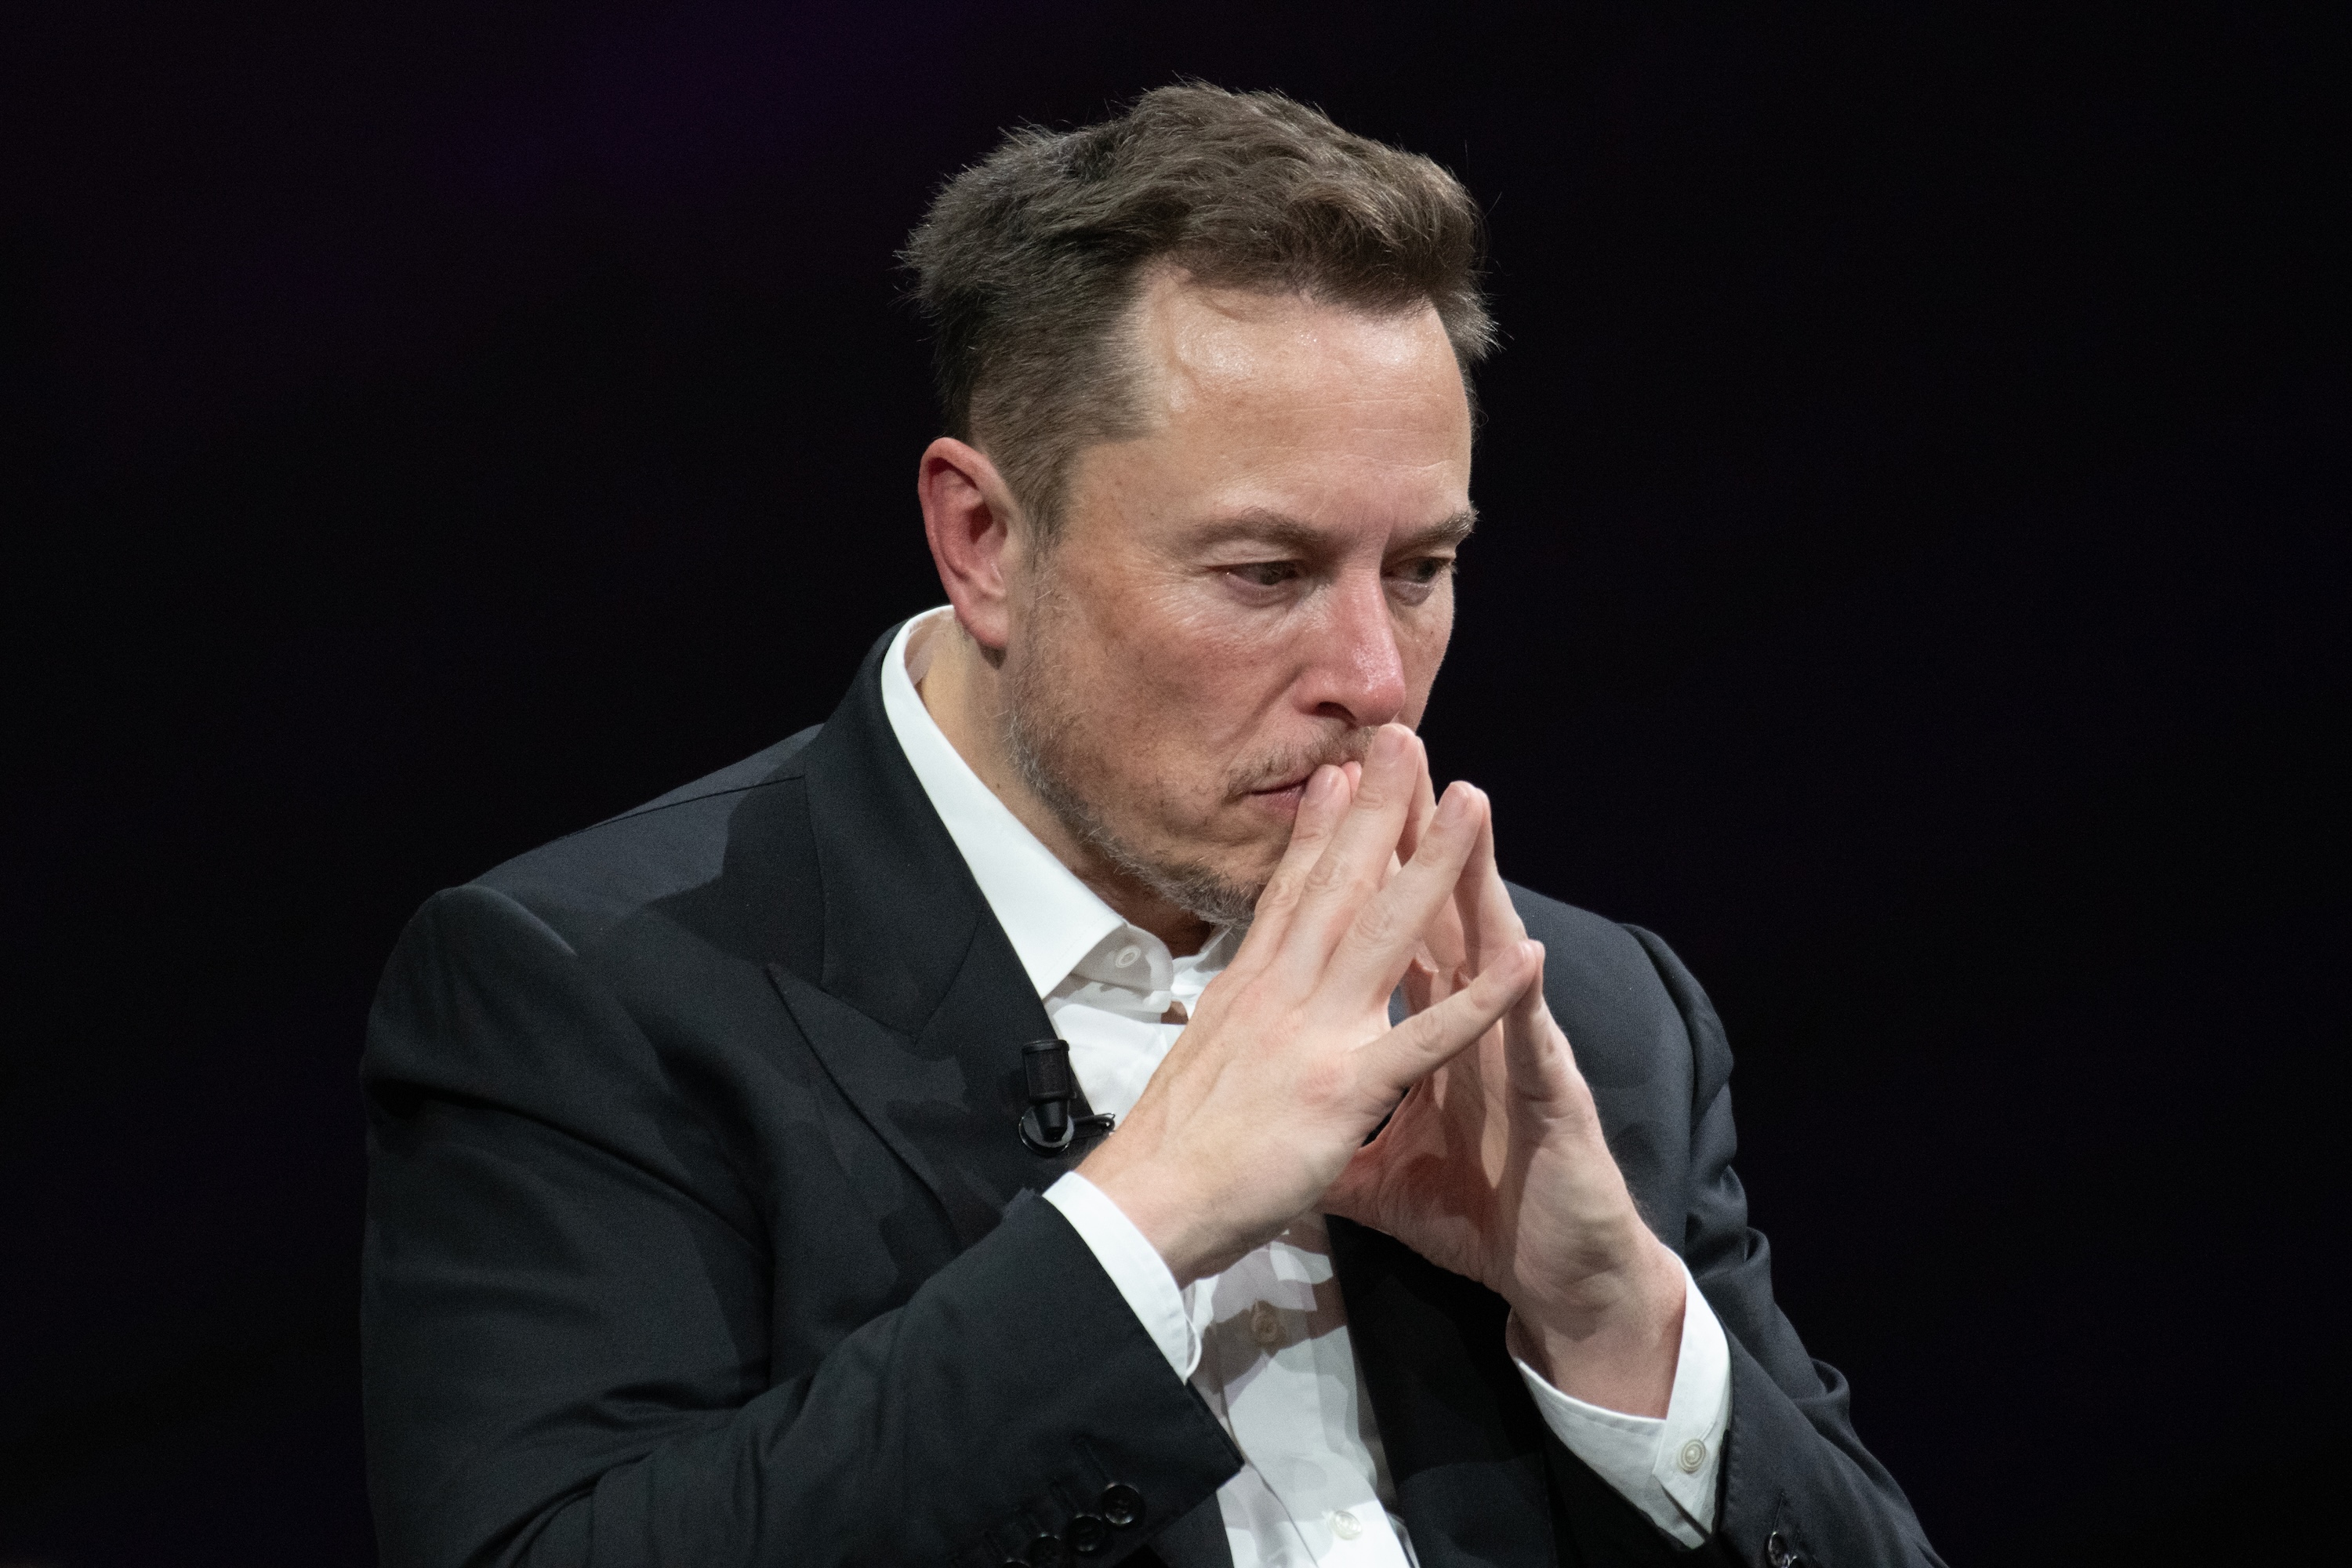 SpaceX poursuivie aux États-Unis : mais qu'a donc bien pu faire Elon Musk encore ?